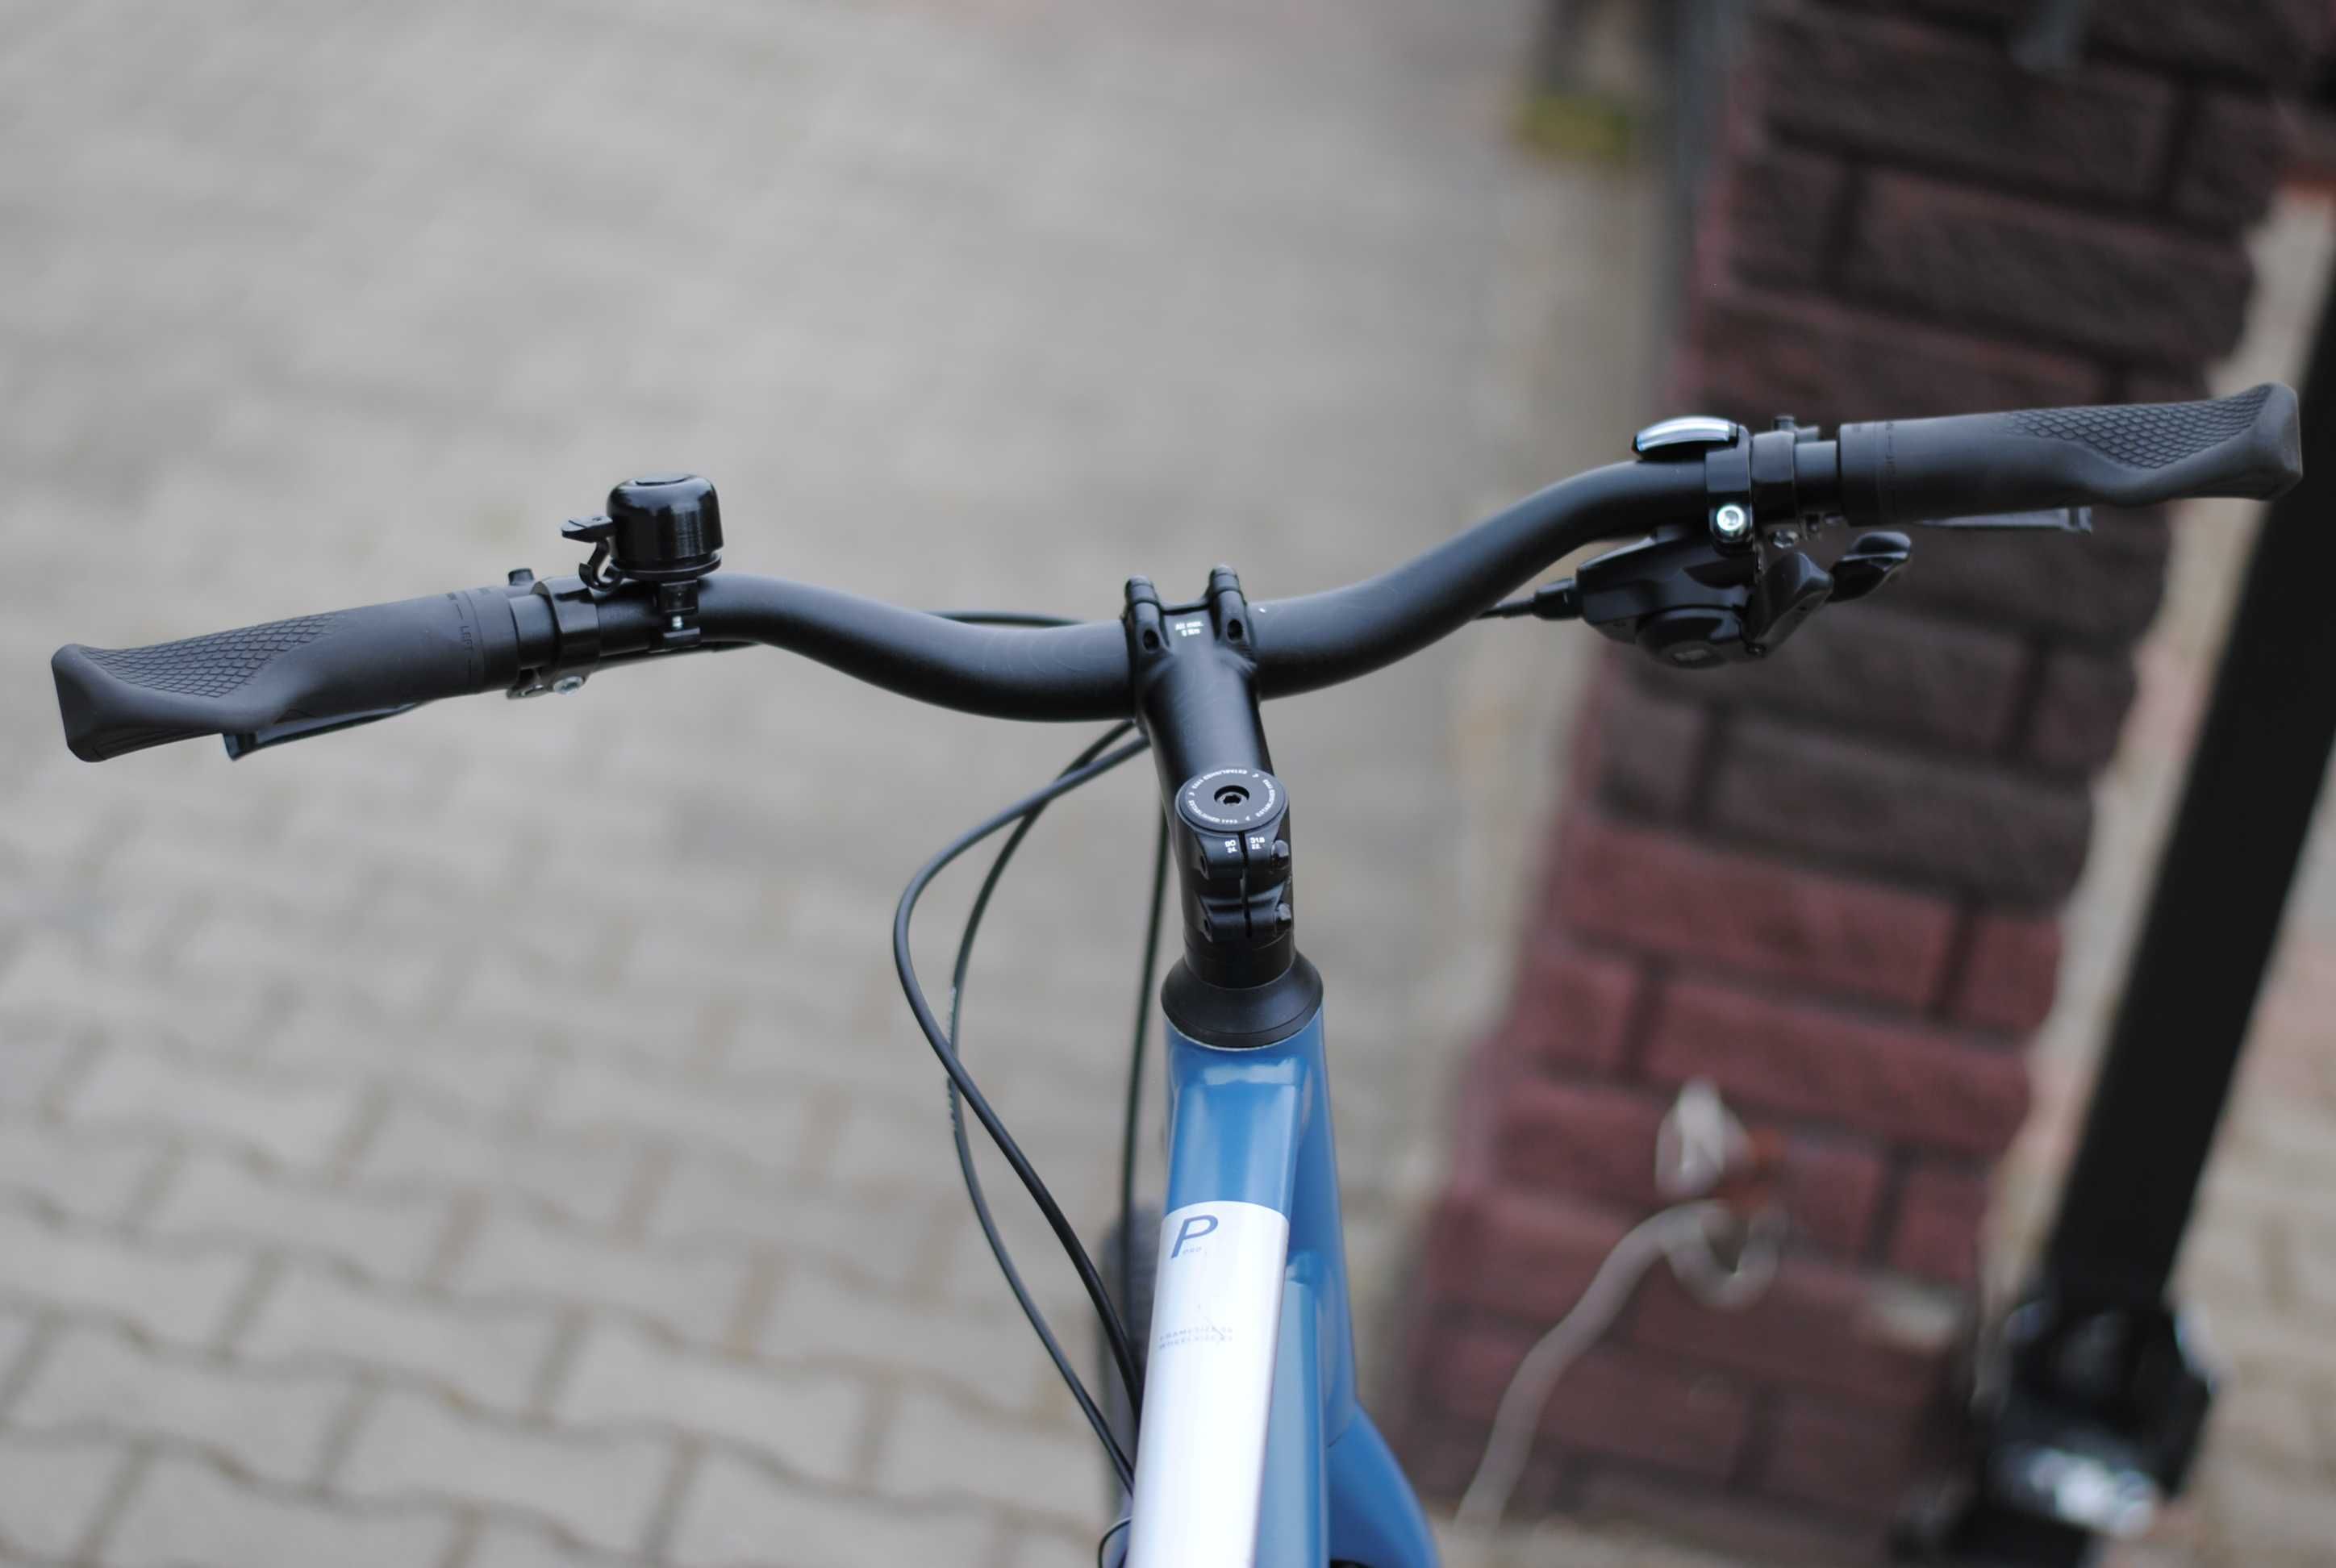 Miejski męski rower Cube Travel shimano nexus 8, hydraulika, tarcze